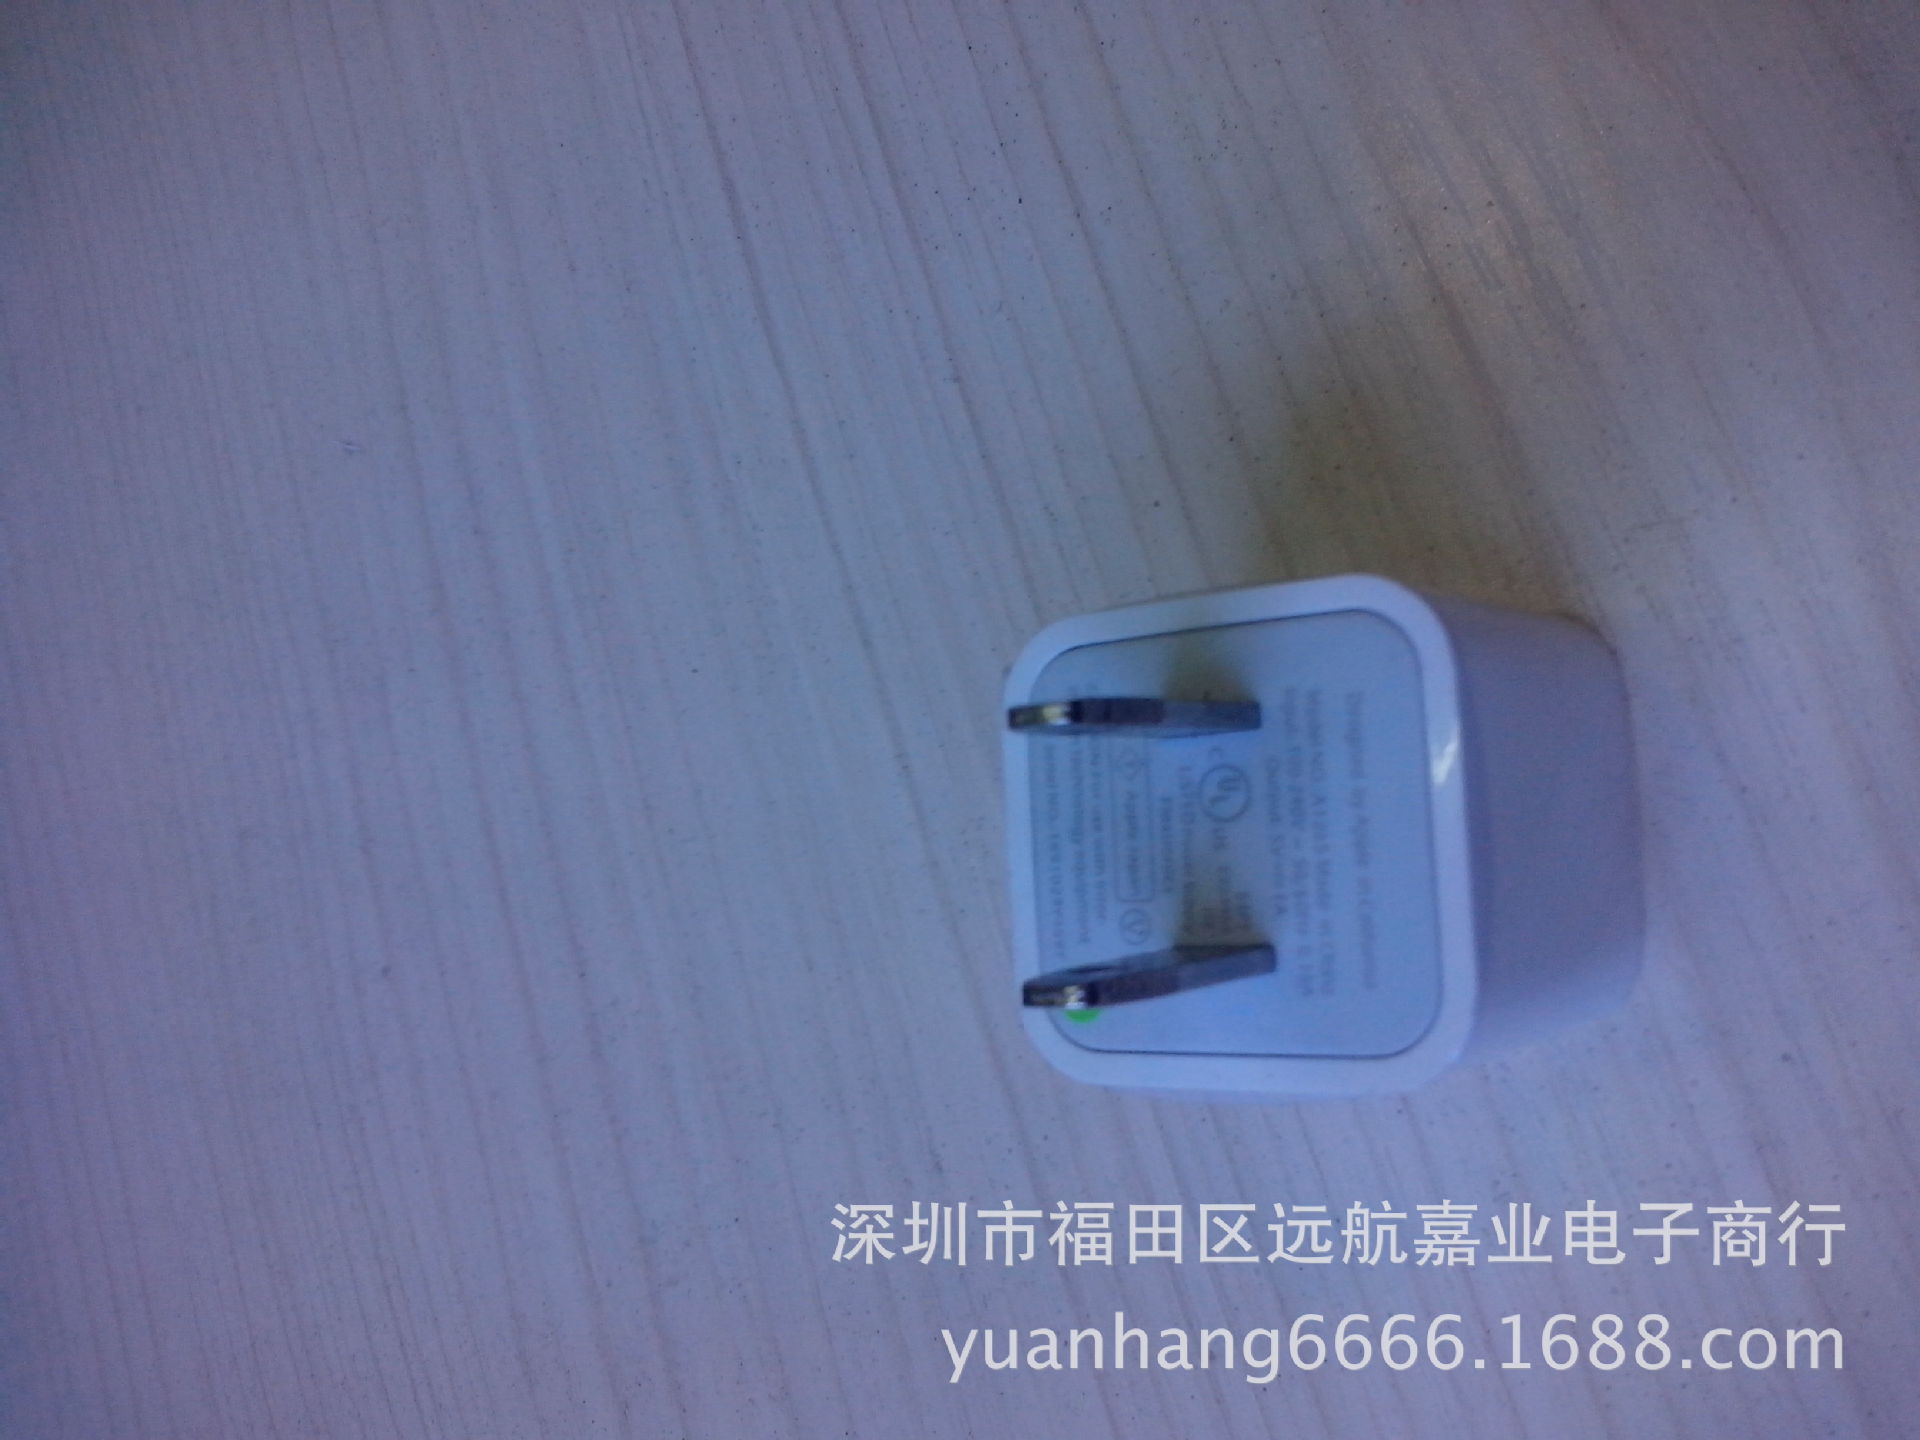 【新款苹果iPhone4 5C 5S ipad充电器 双USB